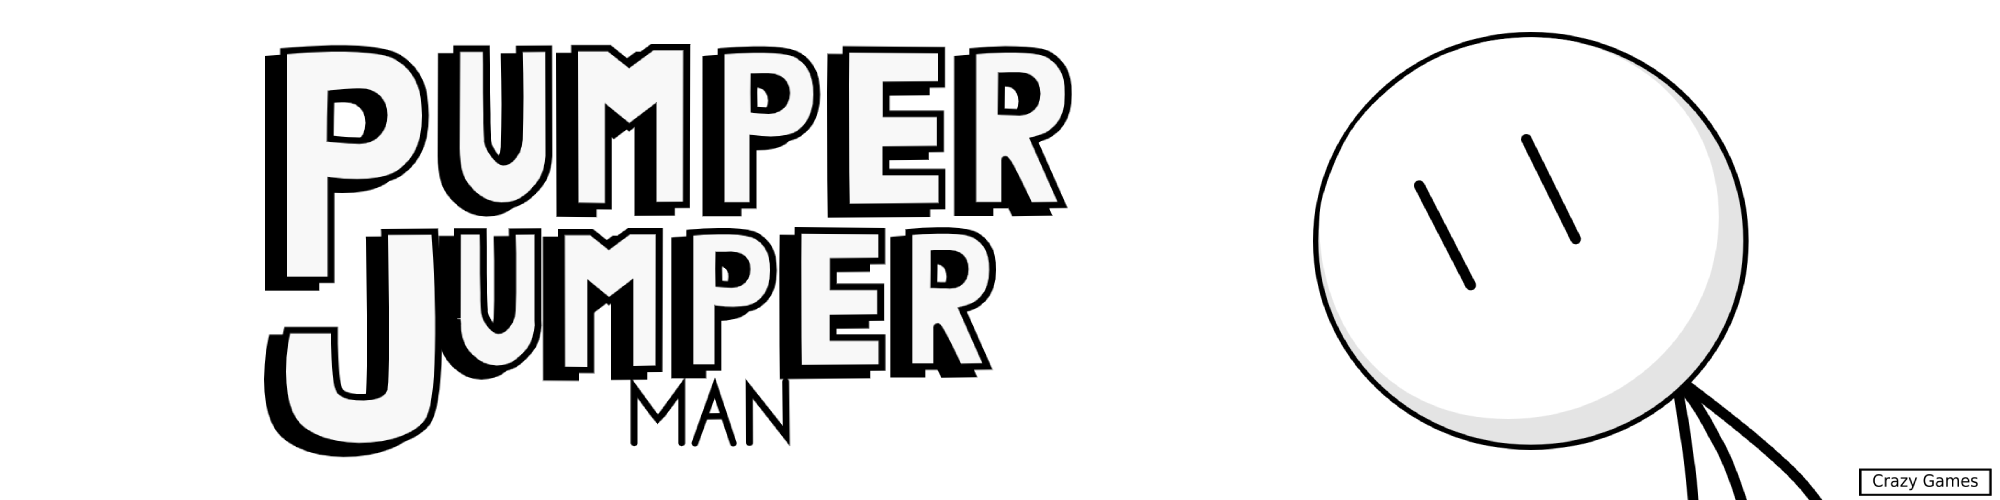 Pumper Jumper Man